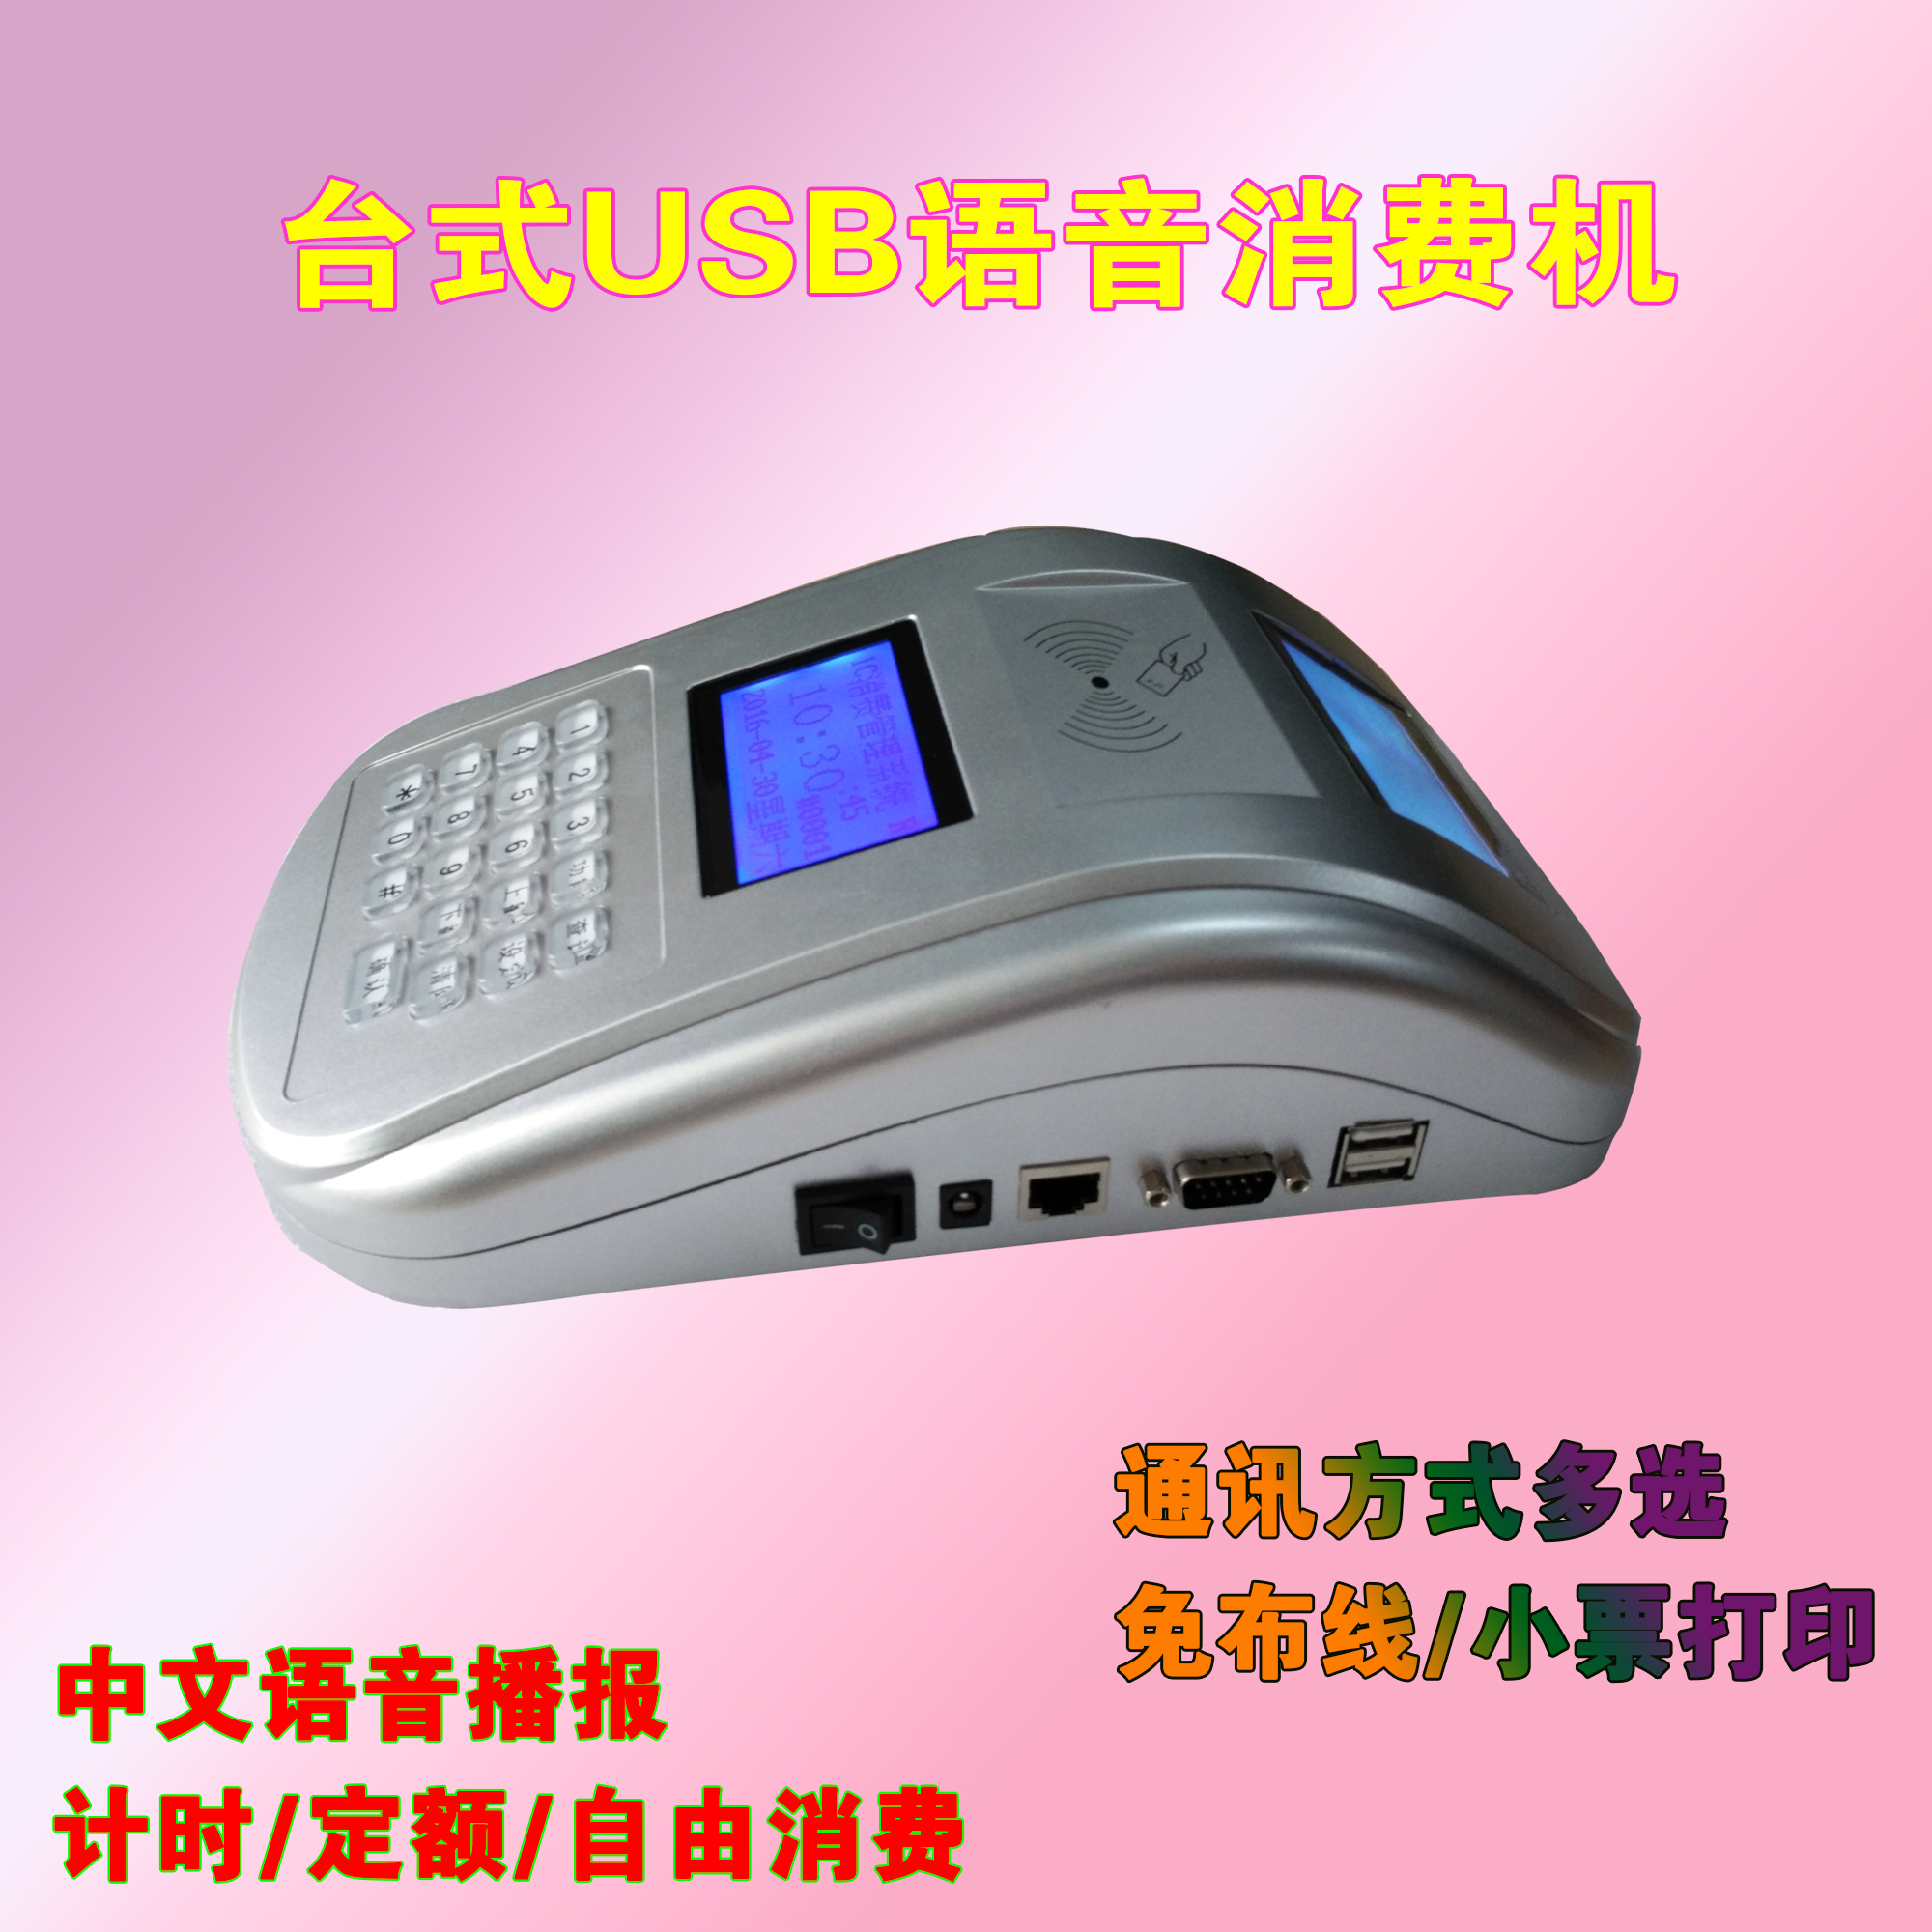 供应中文语音播报停电也用双屏液晶夜市消费机智能USB刷卡机饭堂打卡机 USB通讯刷卡机台式液晶售怕机